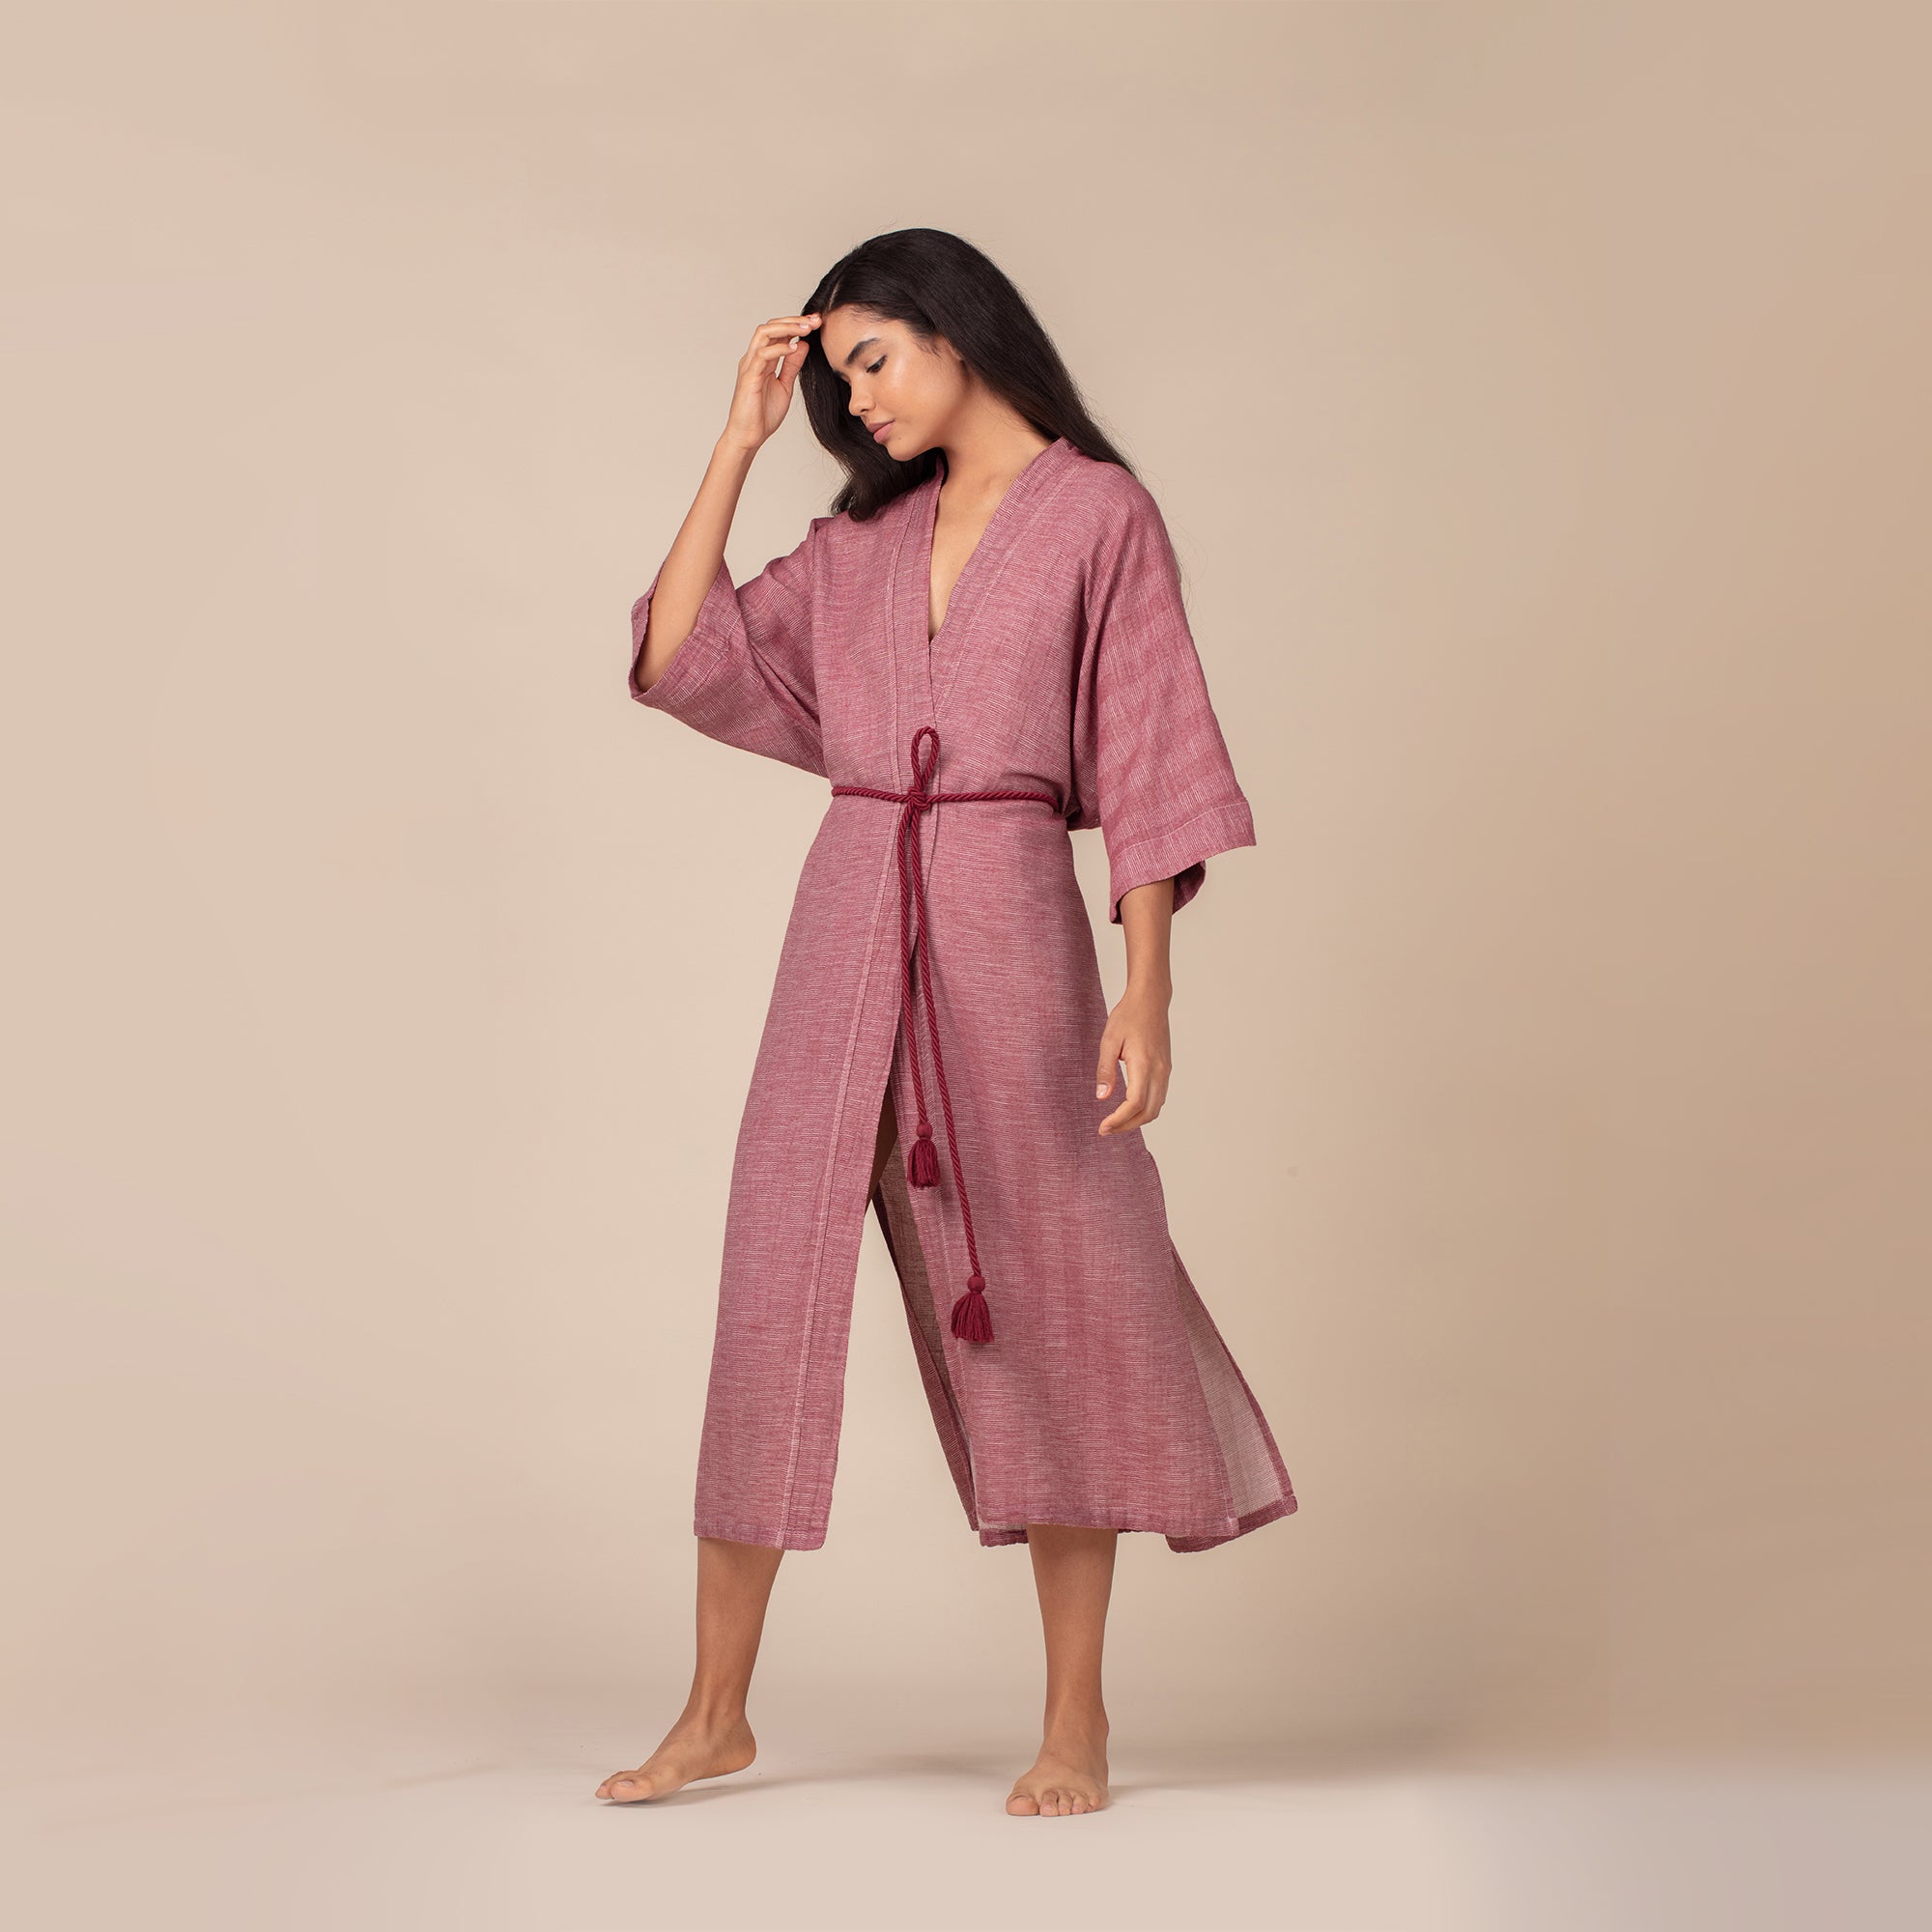 Alvina Kimono - Raspberry - Raspberry - Casual Kimonos